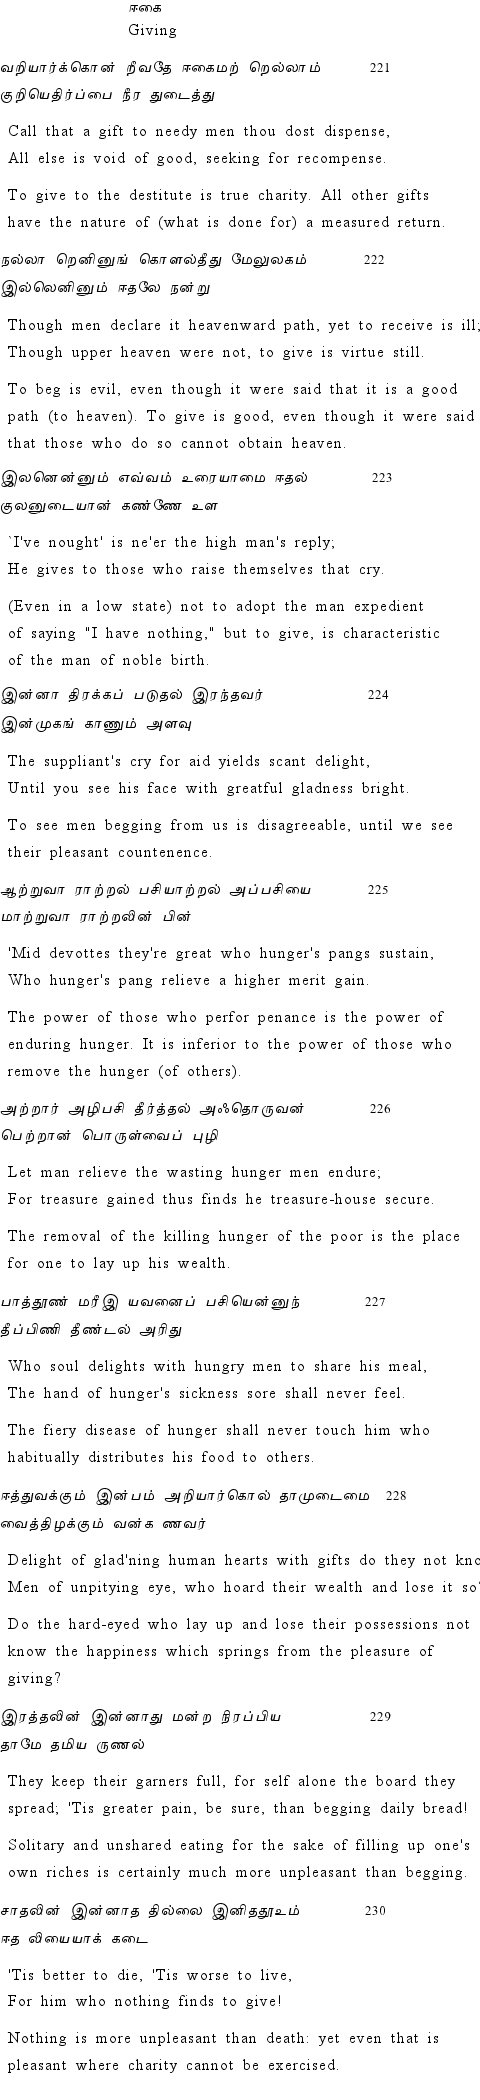 Text of Adhikaram 23